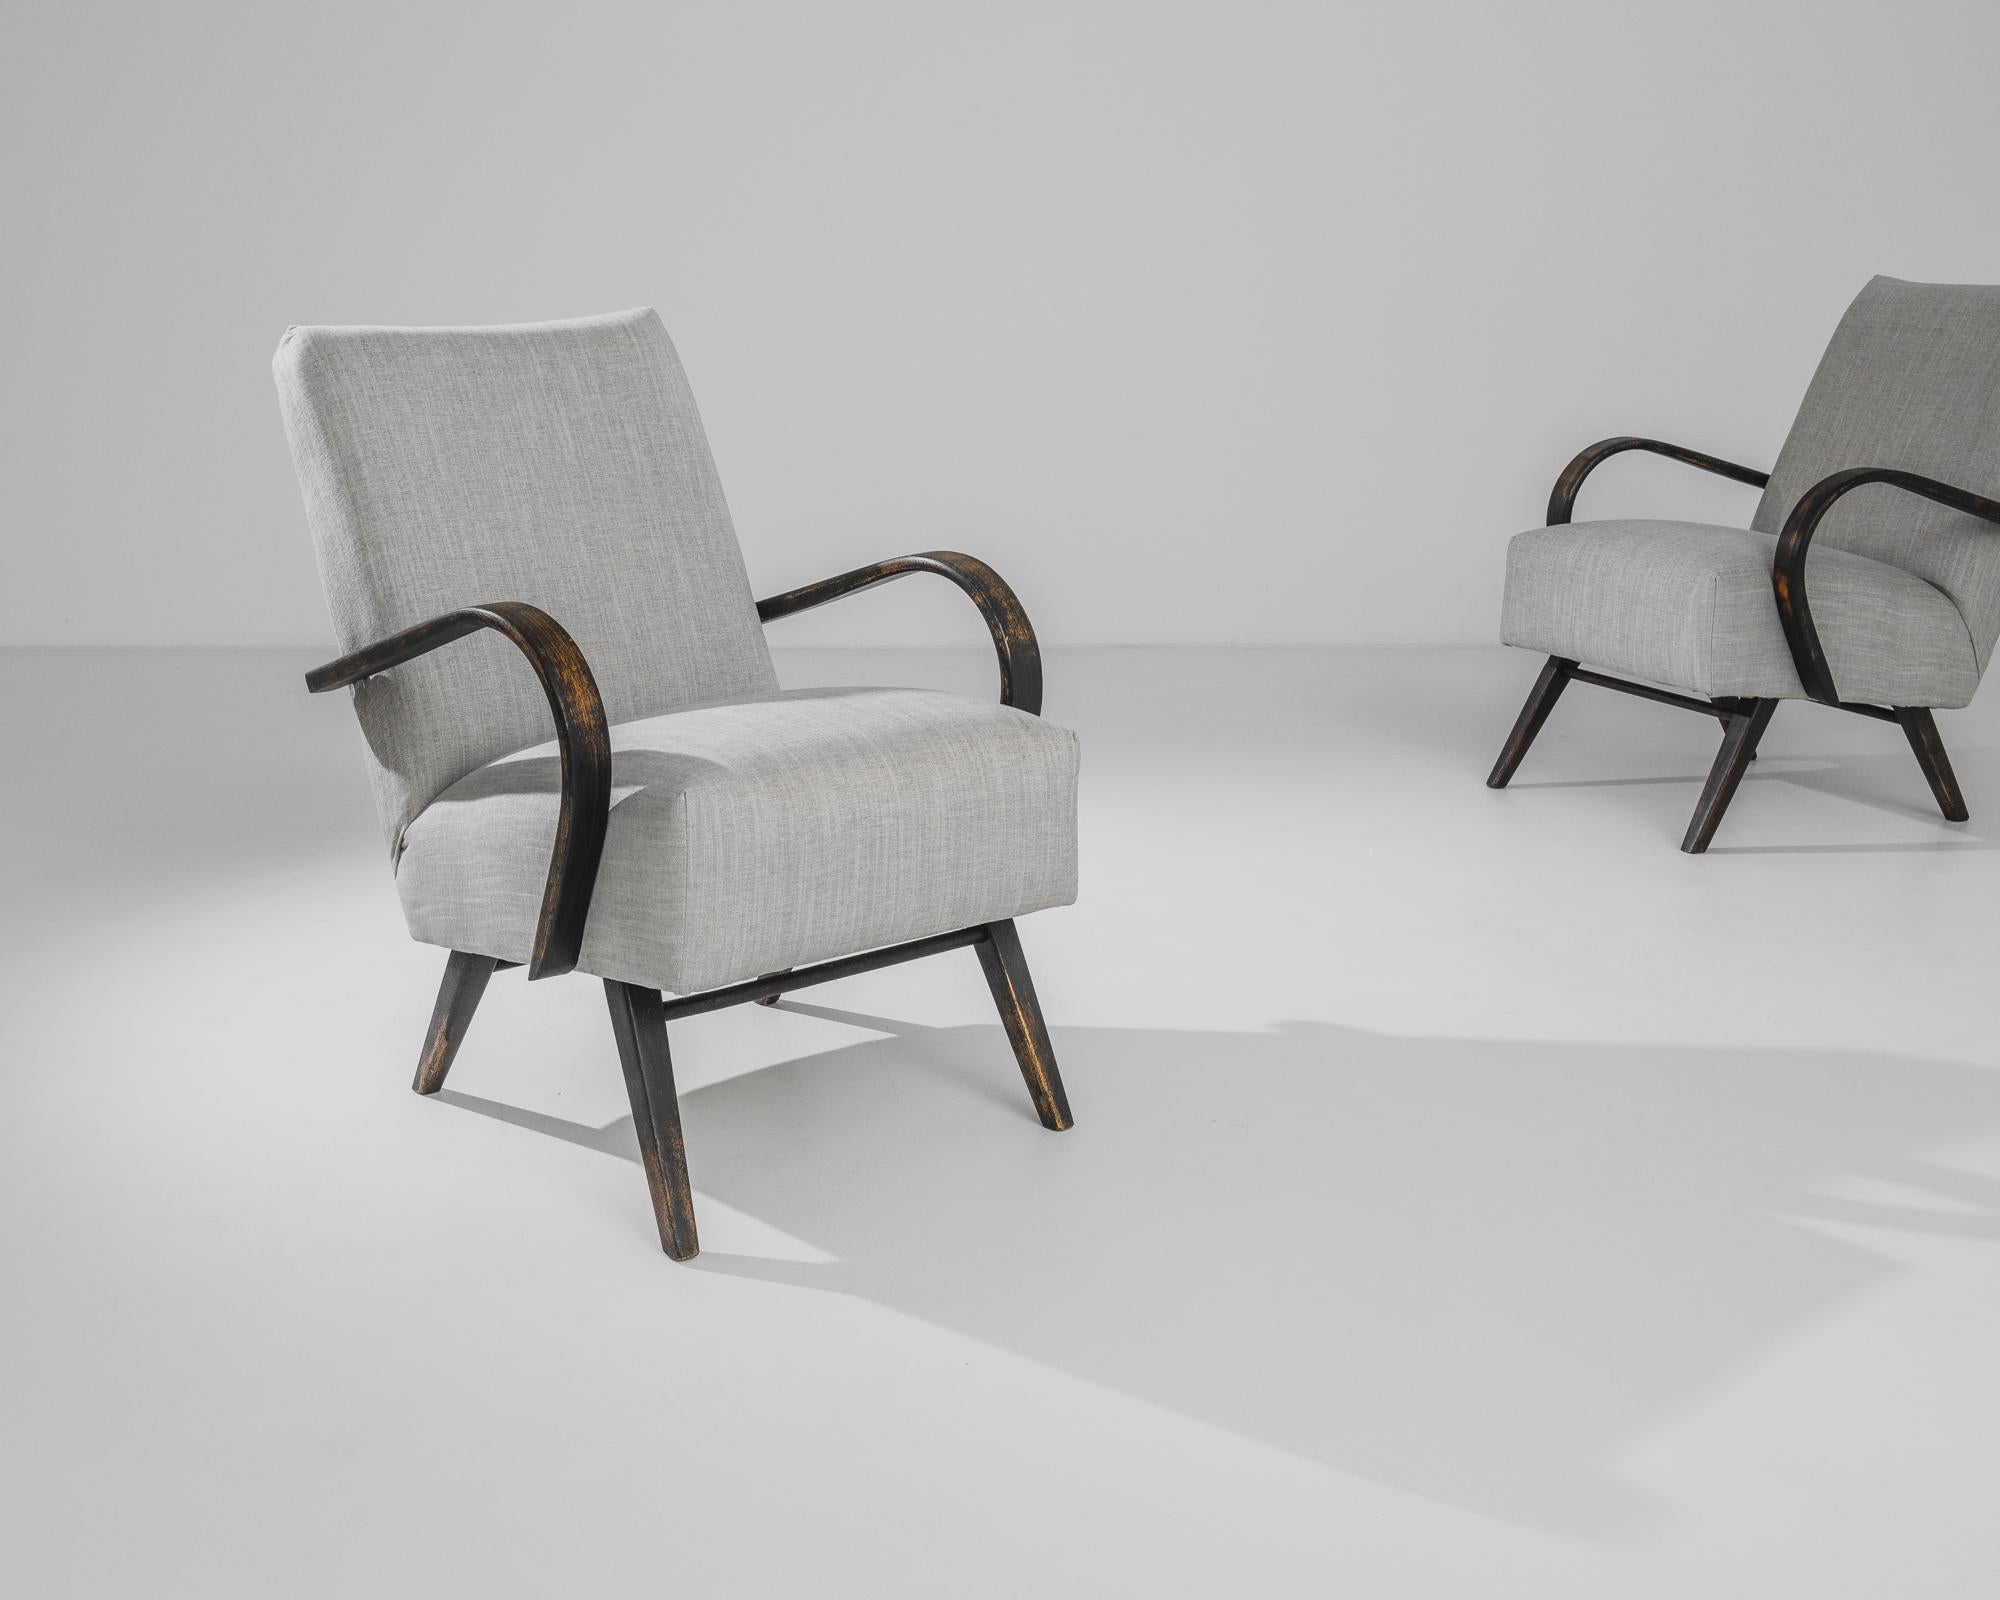 Laissez-vous séduire par le design moderne du milieu du siècle avec cette paire exquise de fauteuils tchèques en bois des années 1950, signée J. Halabala. Les chaises mettent en valeur le flair de Halabala pour les formes curvilignes et l'élégance